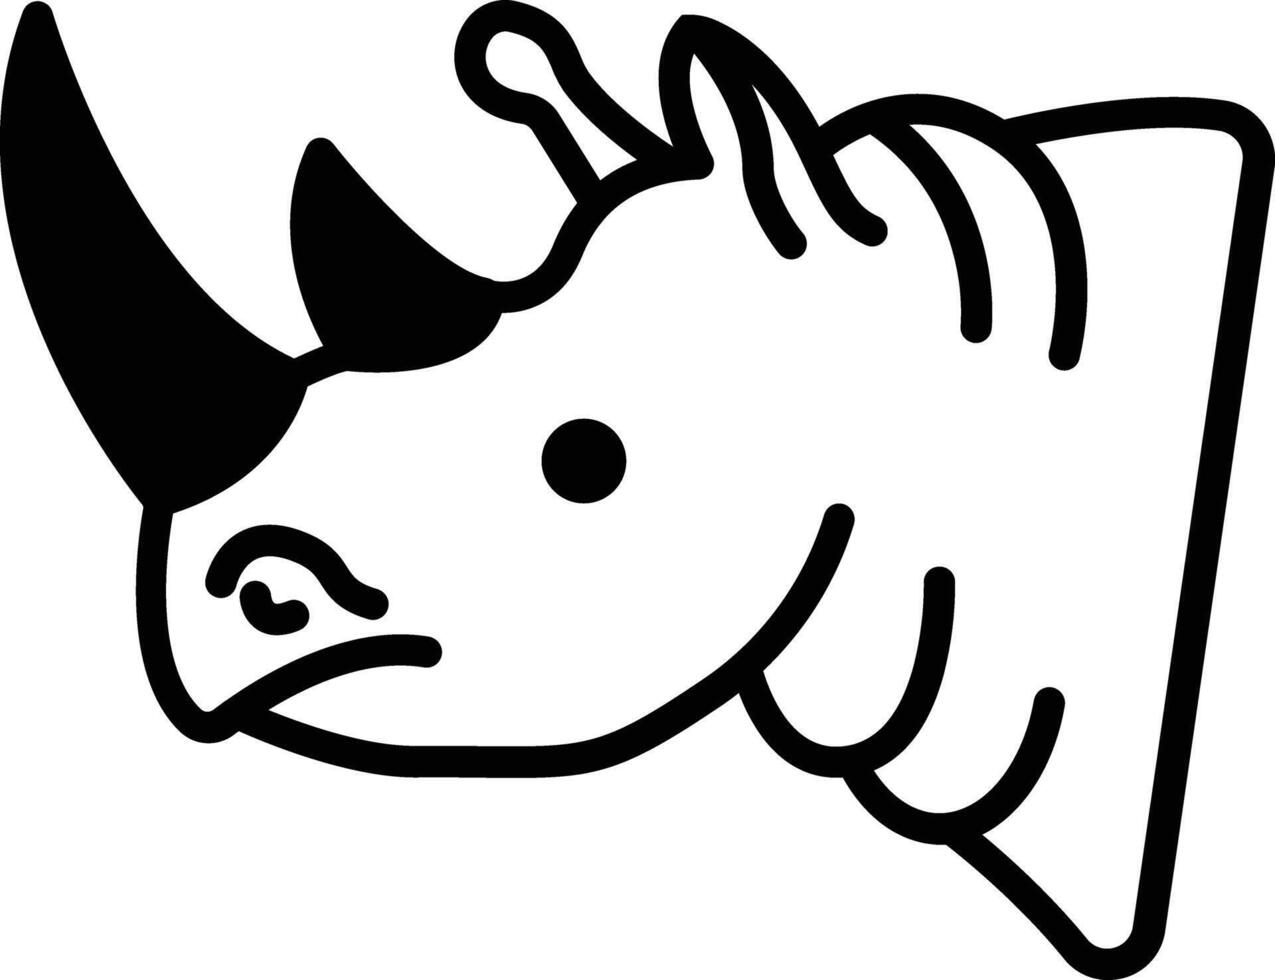 Nashorn Gesicht Glyphe und Linie Vektor Illustration